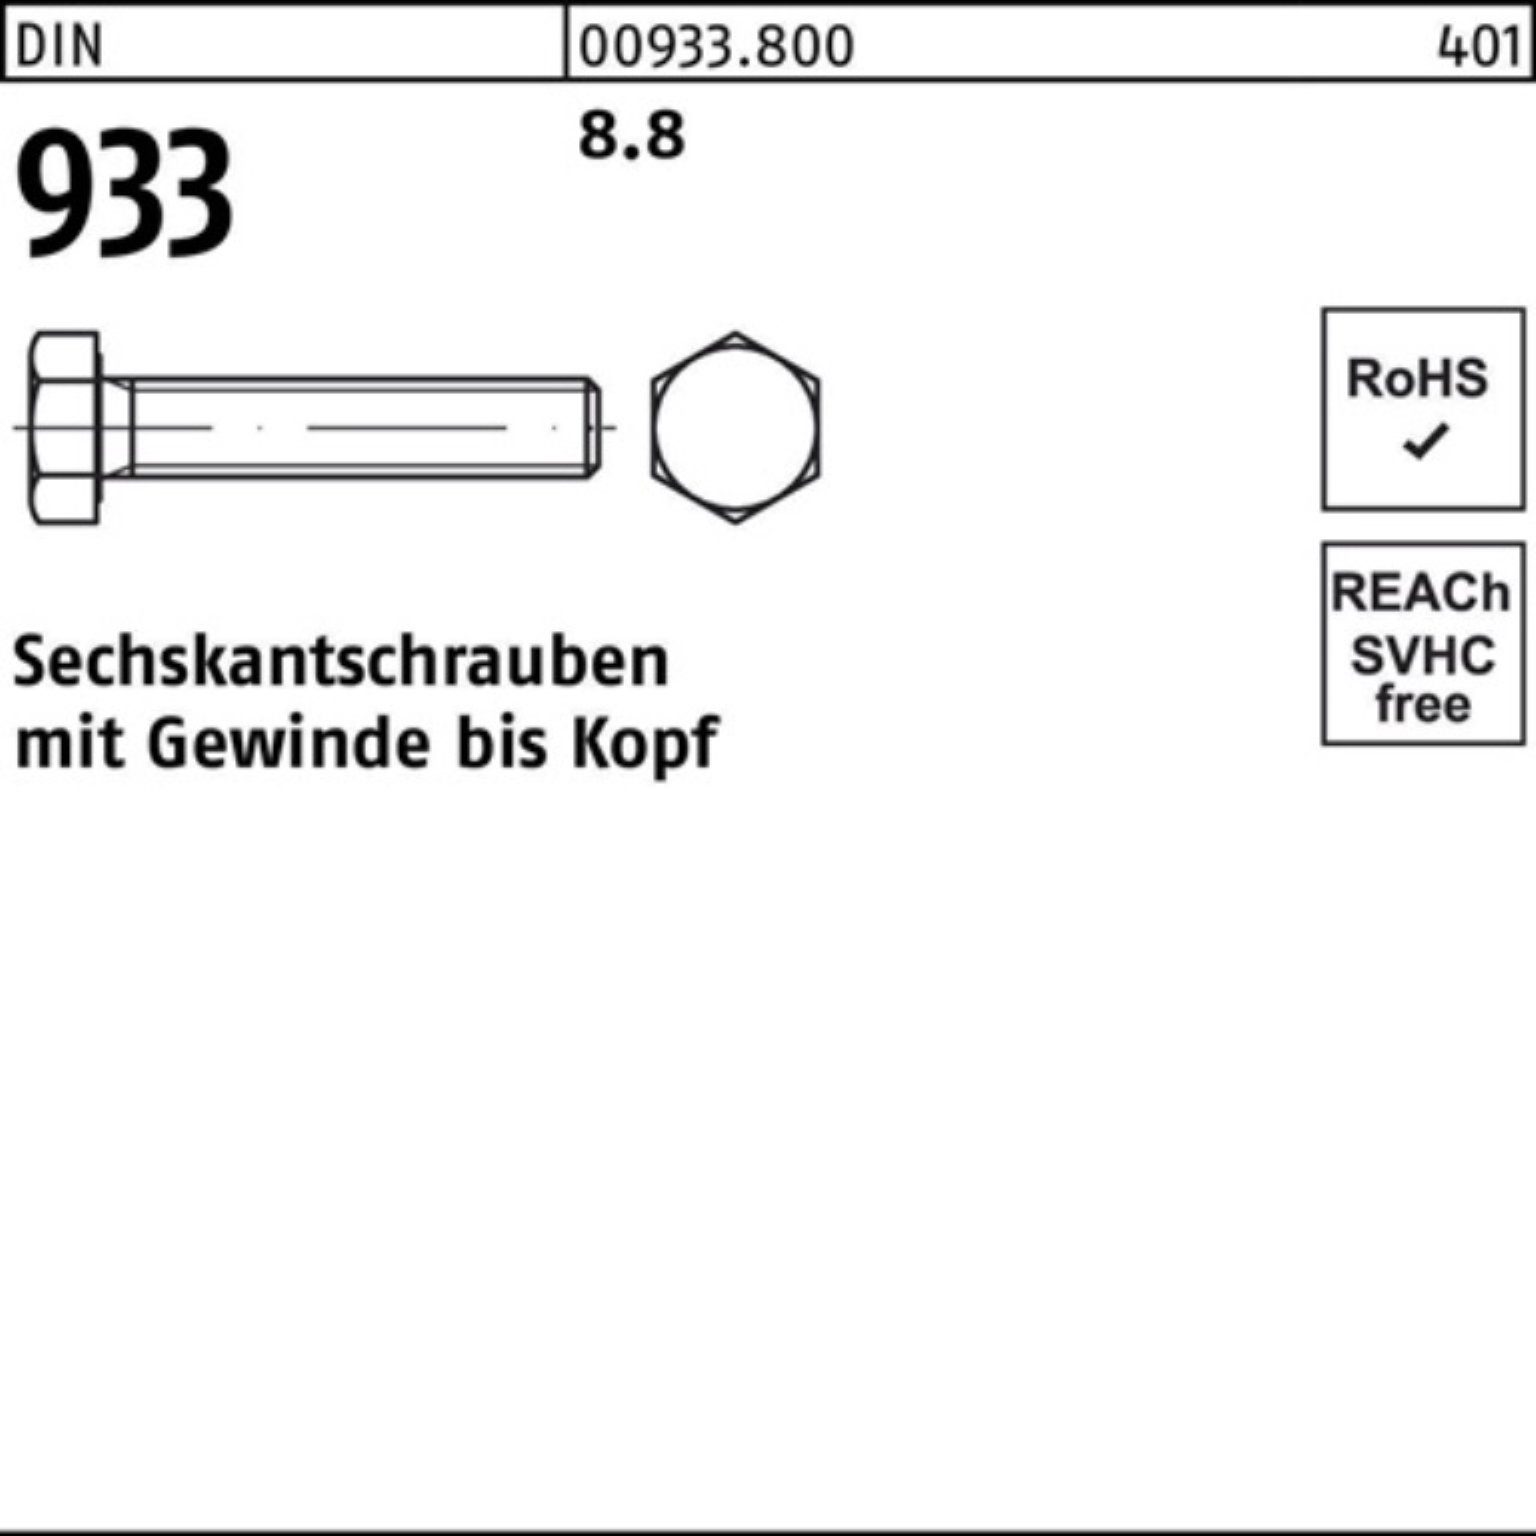 Reyher Sechskantschraube 100er Pack 1 8.8 Stück 933 Sechskantschraube VG M27x 933 DIN DIN 130